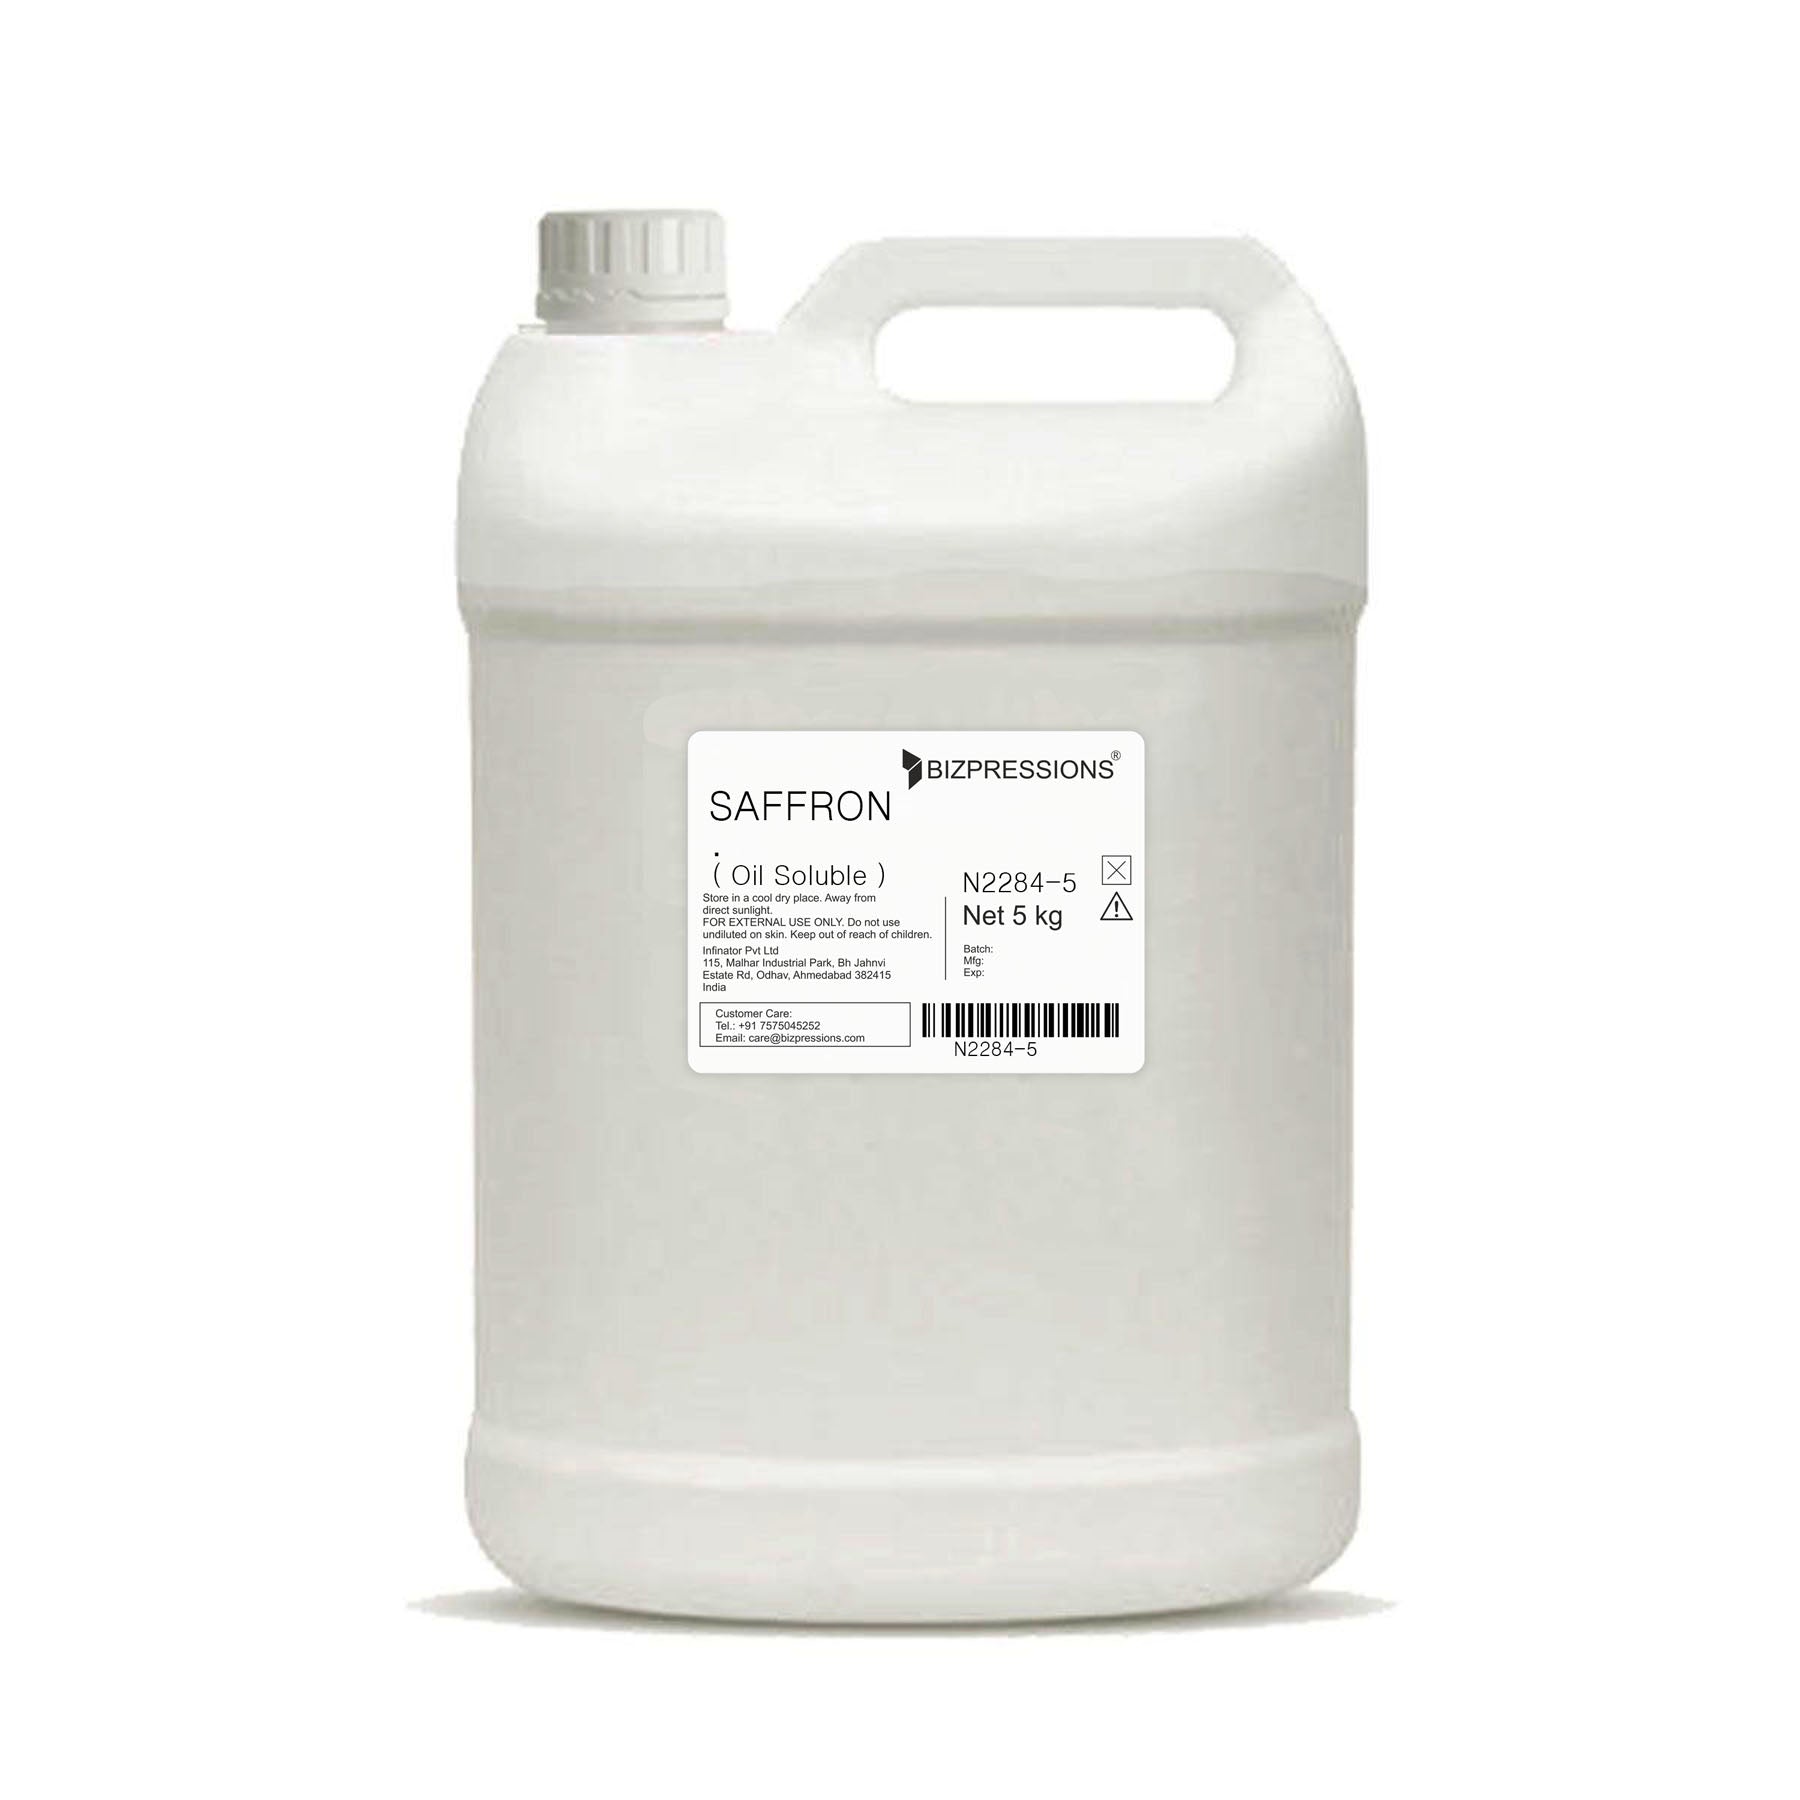 SAFFRON - Fragrance ( Oil Soluble ) - 5 kg